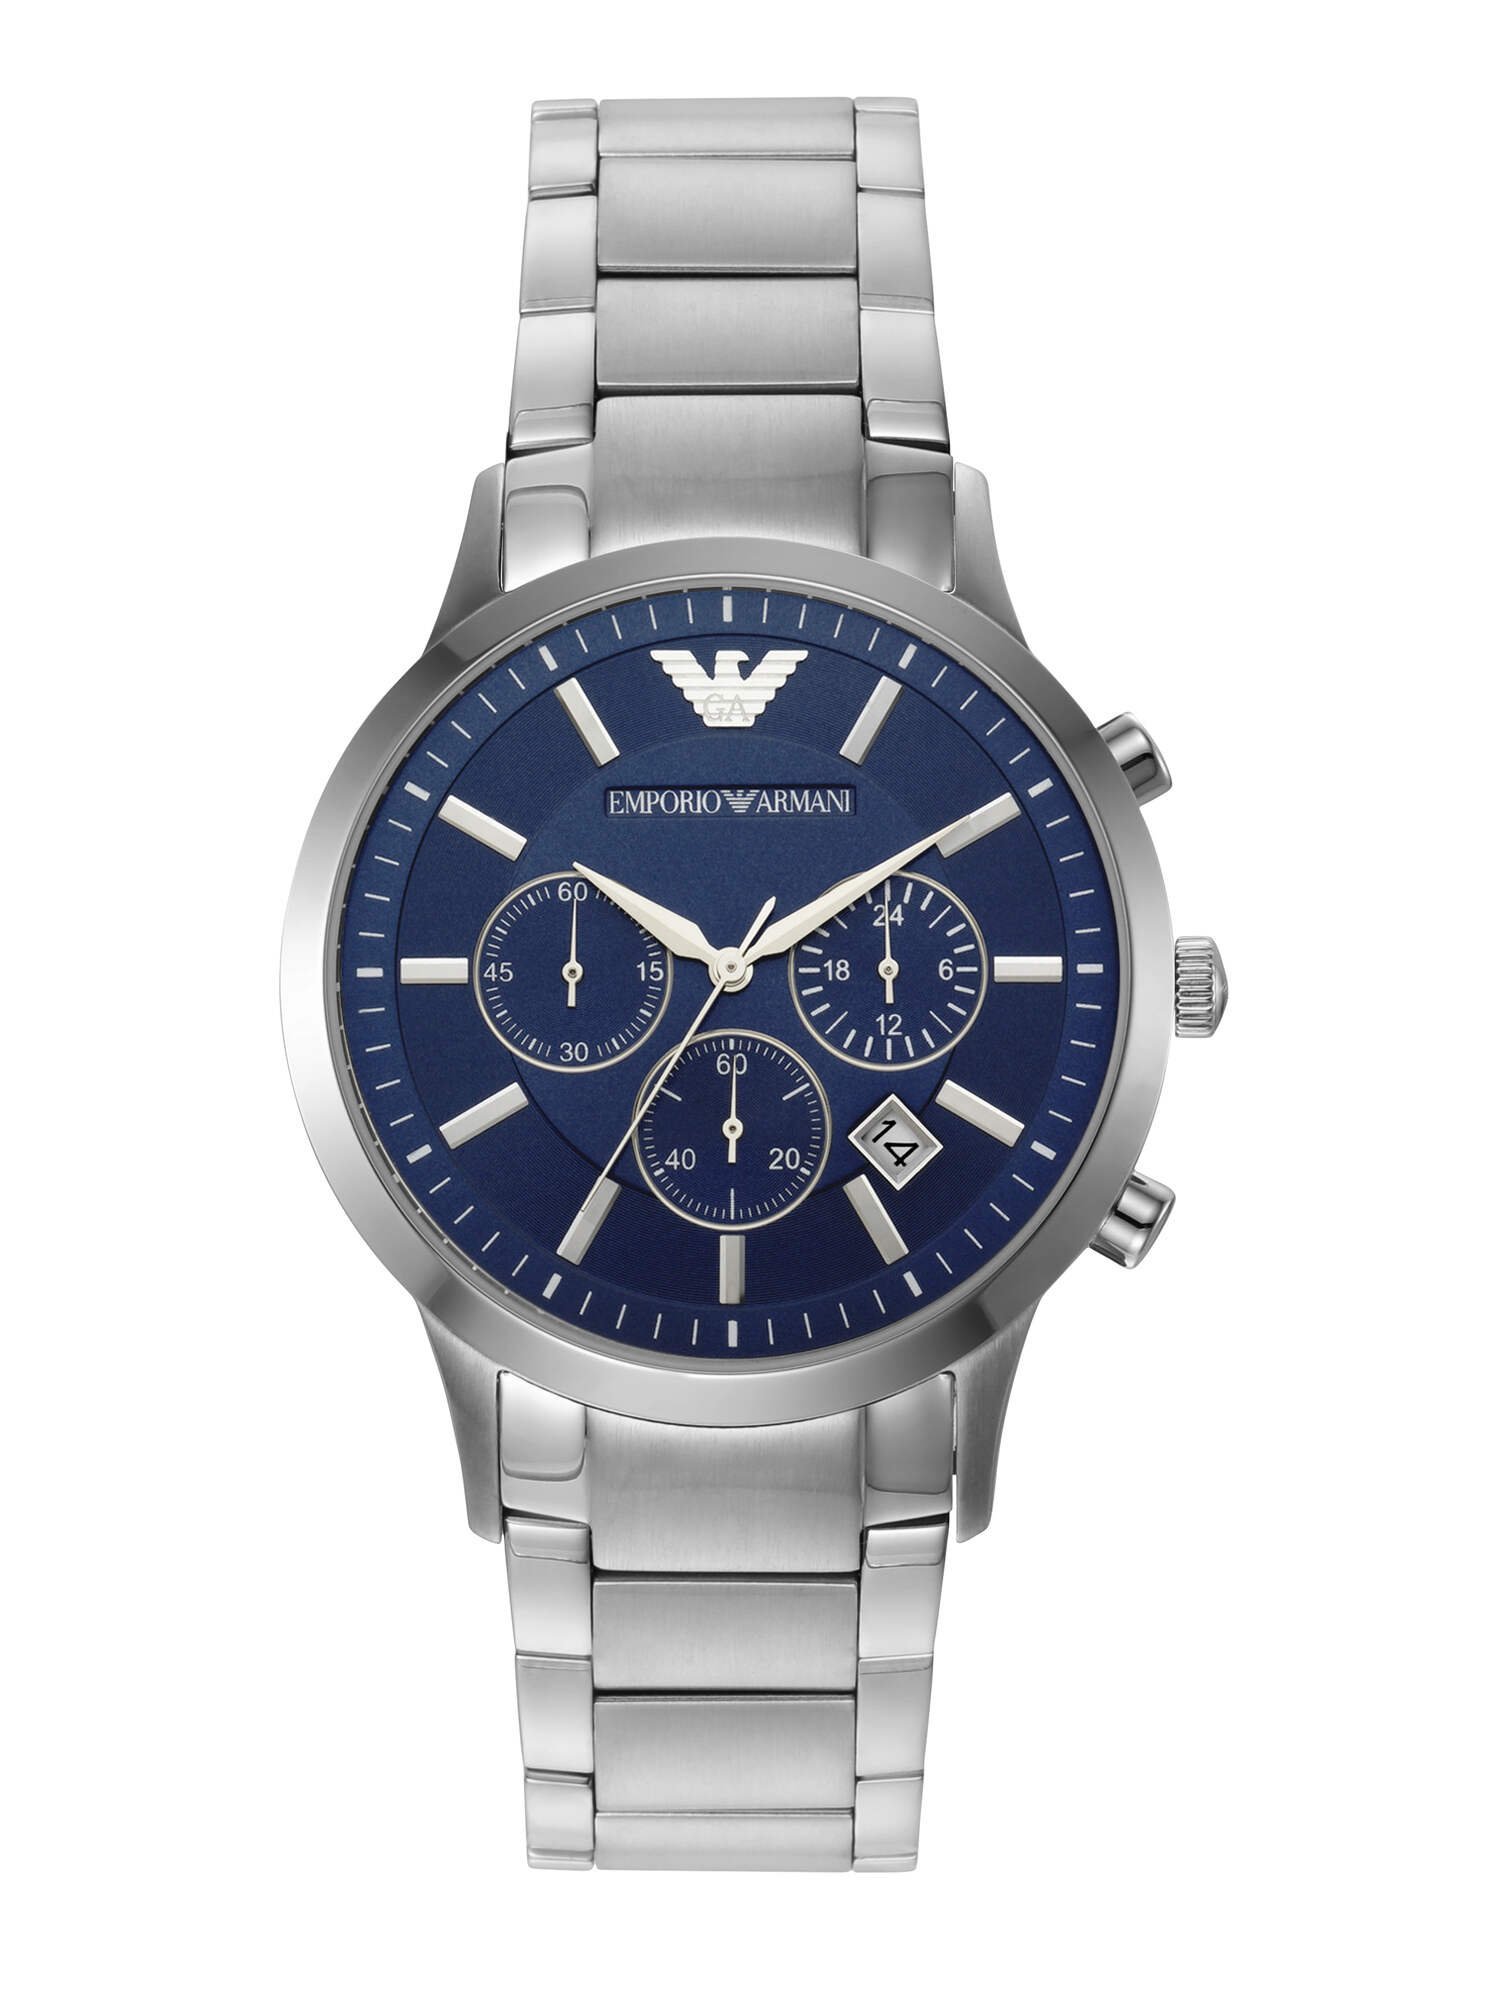 エンポリオ アルマーニ ビジネス腕時計 メンズ EMPORIO ARMANI AR2448 ウォッチステーションインターナショナル アクセサリー・腕時計 腕時計 シルバー【送料無料】